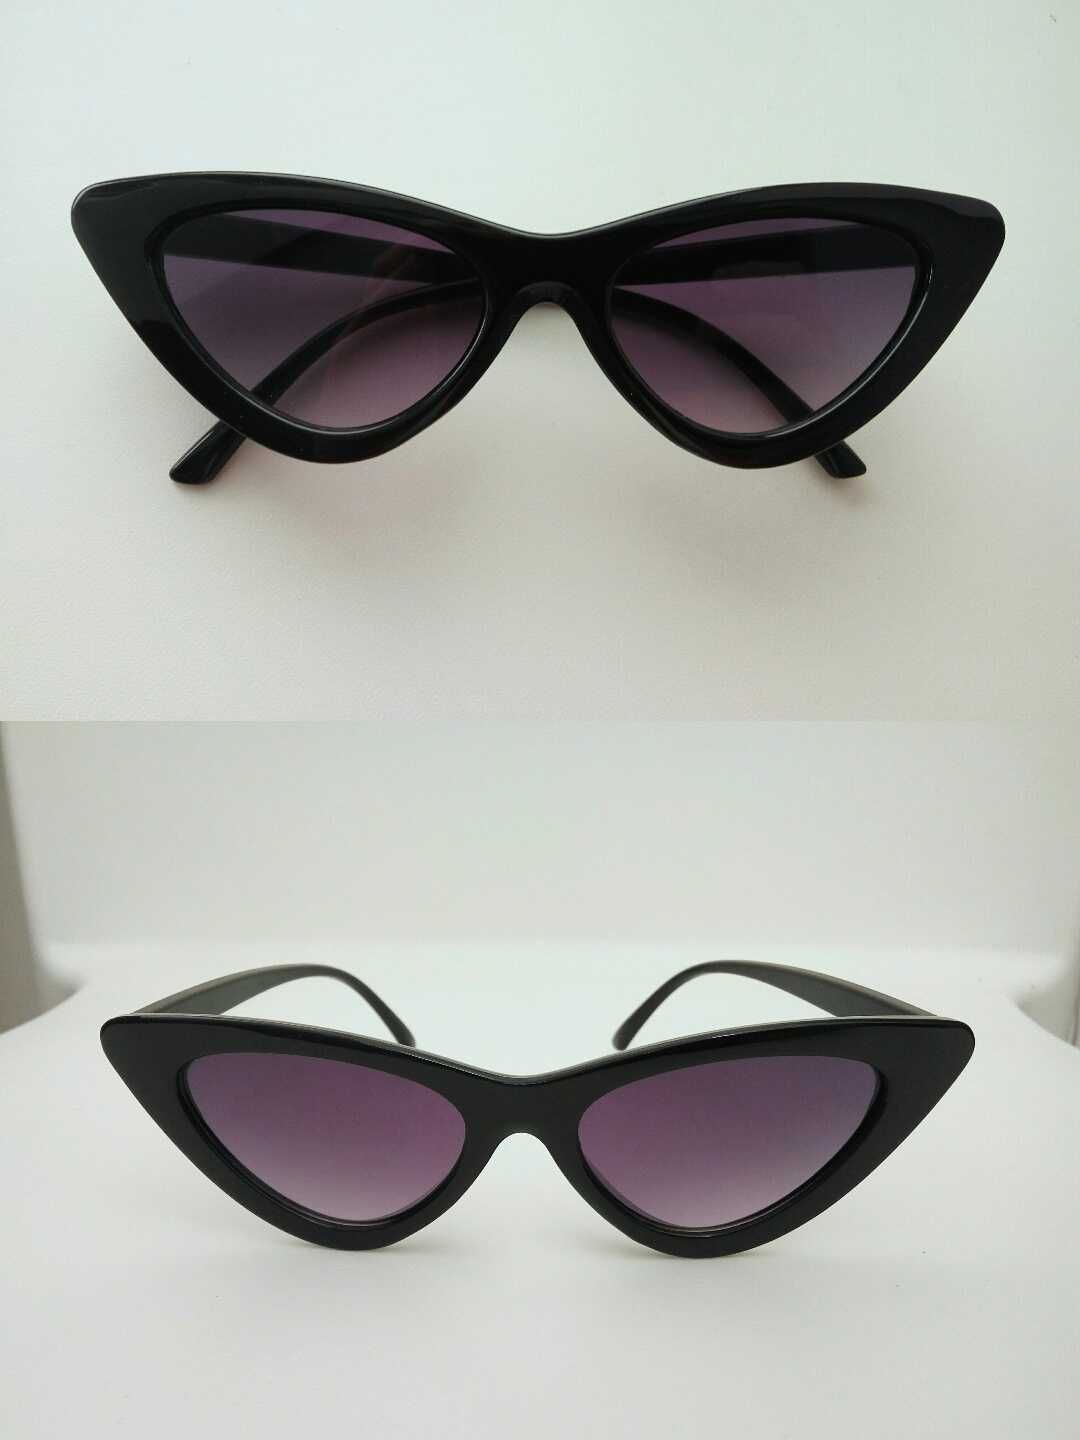 Окуляри очки имиджевые іміджеві для фотосессий рожеві розовые красные